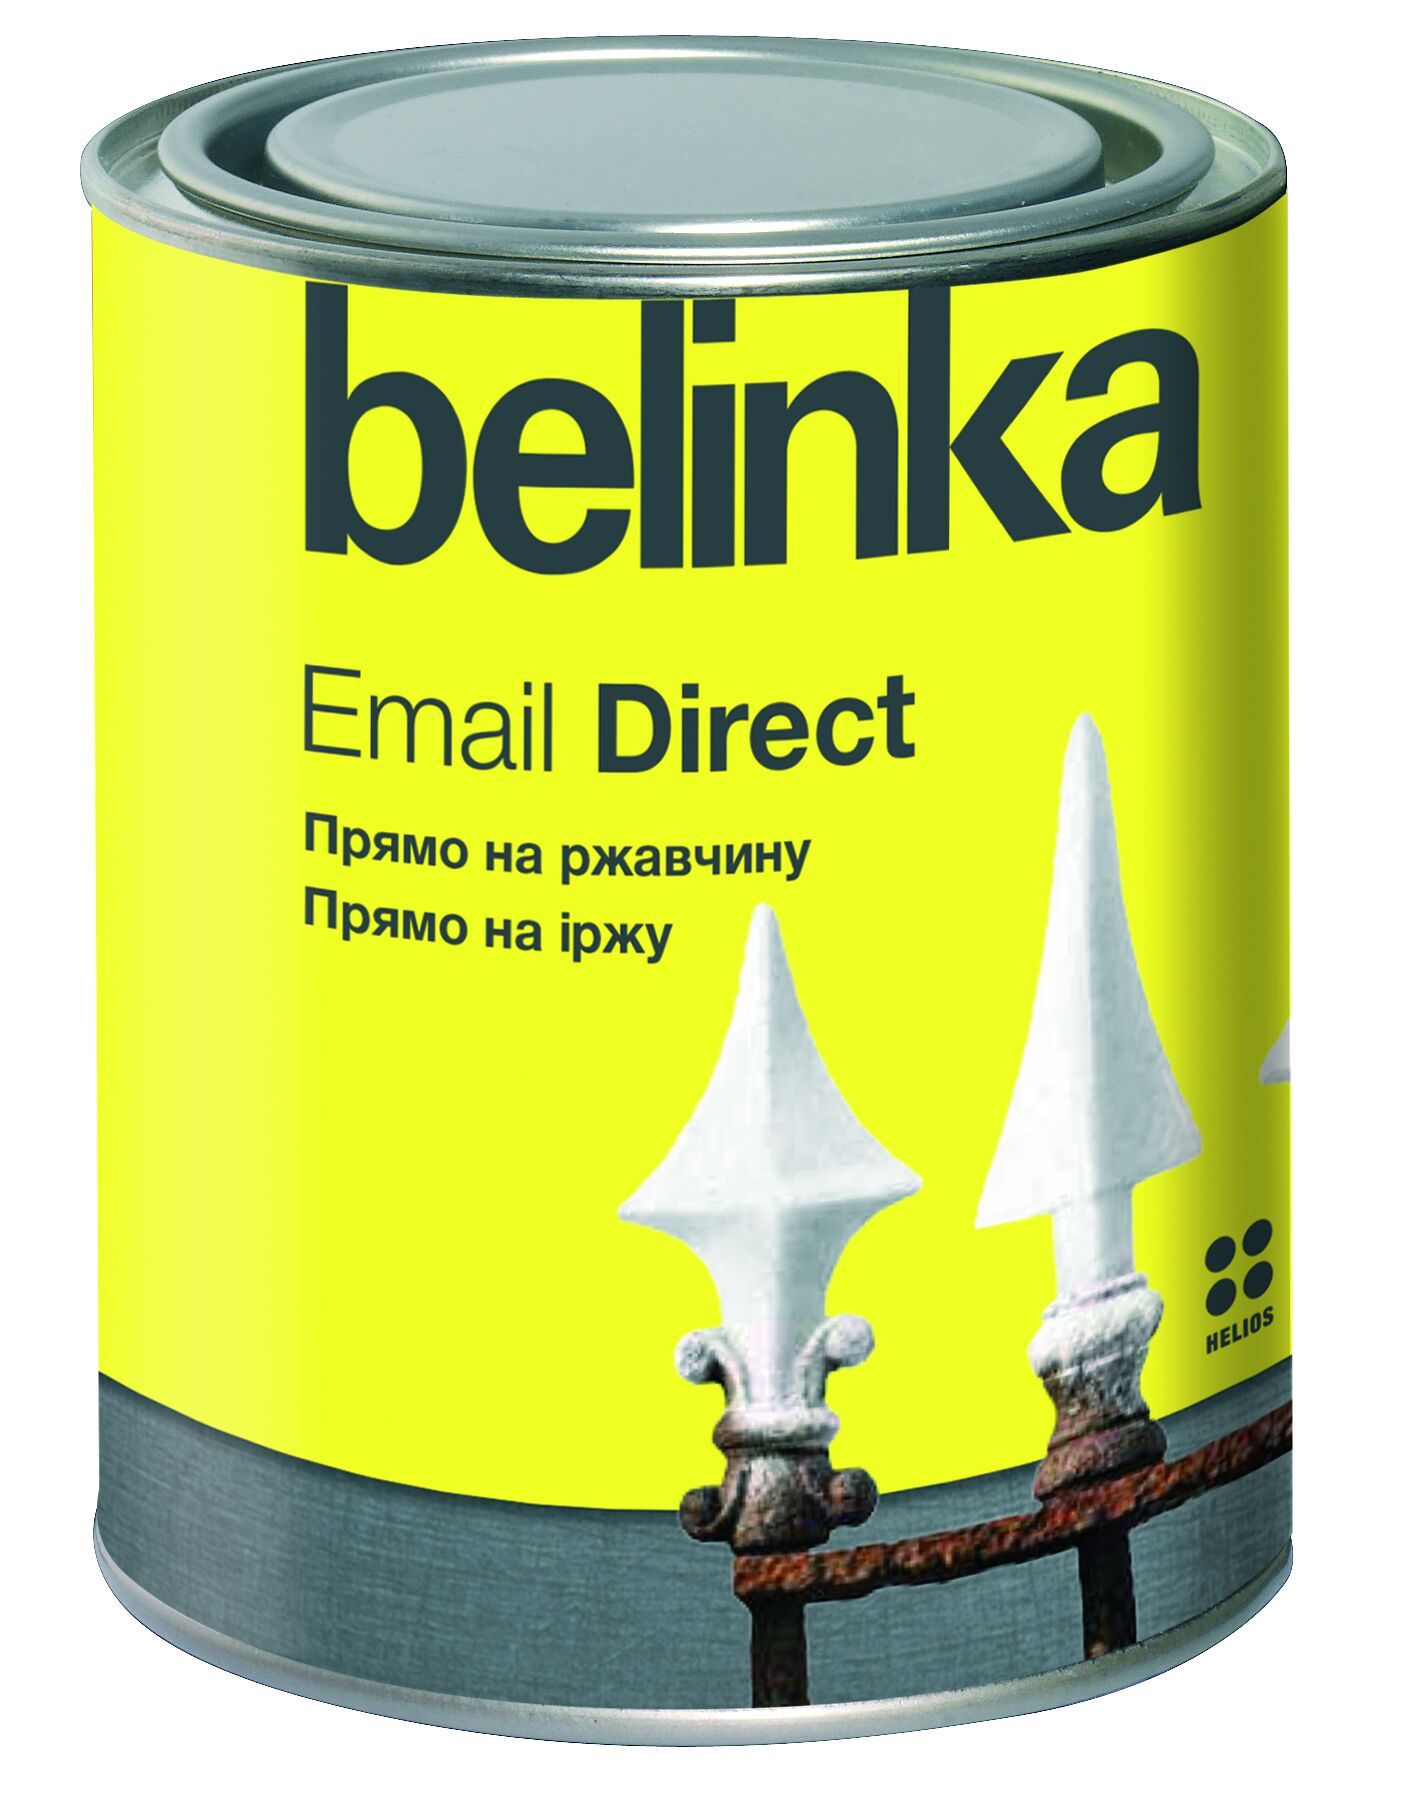 Эмаль по ржавчине Email Direct Belinka Коричневая 2,5 л